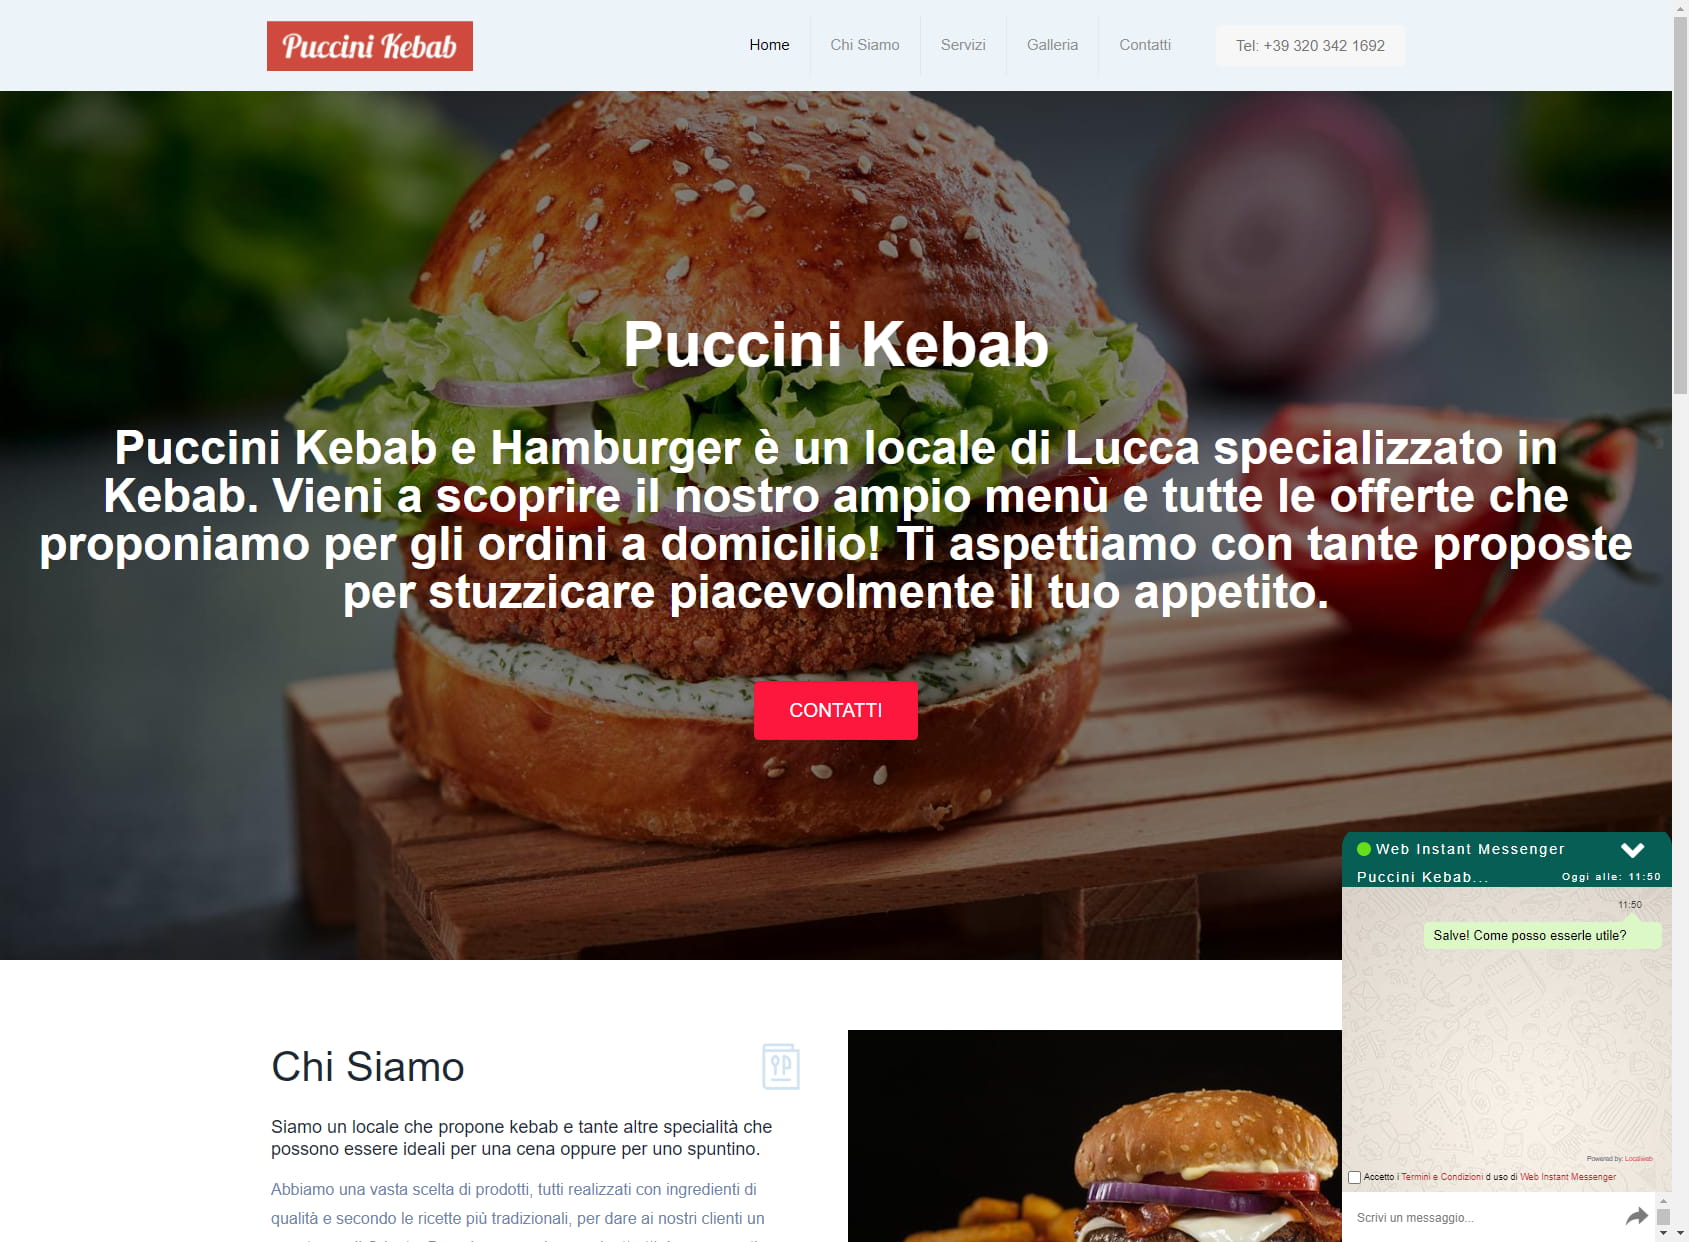 Puccini Kebab